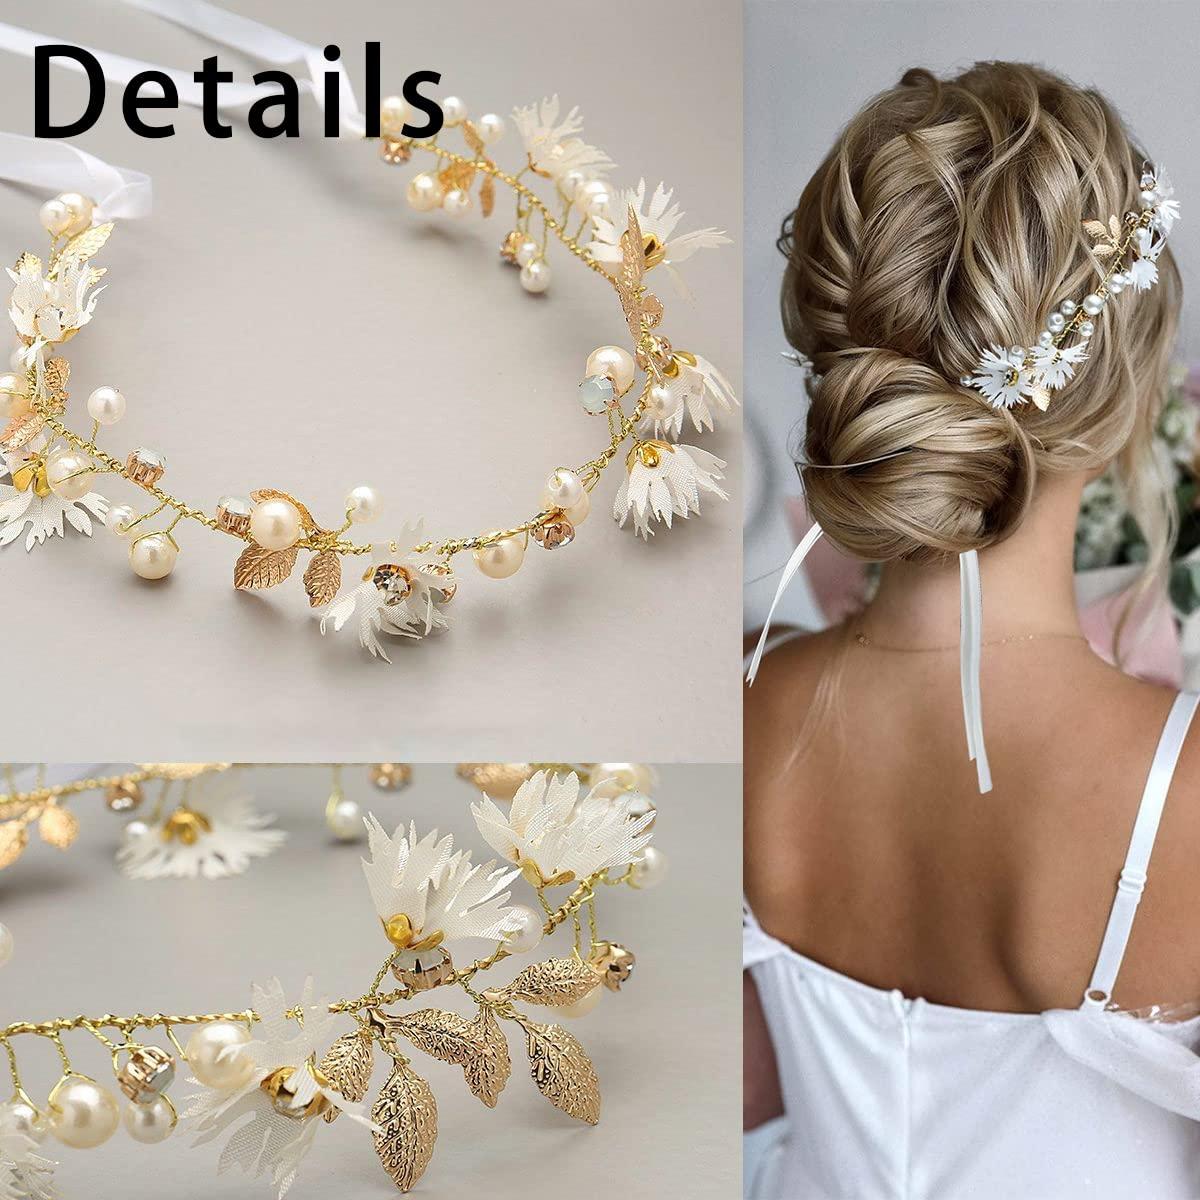 White Pearl Hair Band, High Quality Pearl Hair, Pearl Hair Accessories,  Simple Pearl Tiara, Bridal Headband, Pearl Headband, Bridesmaid 